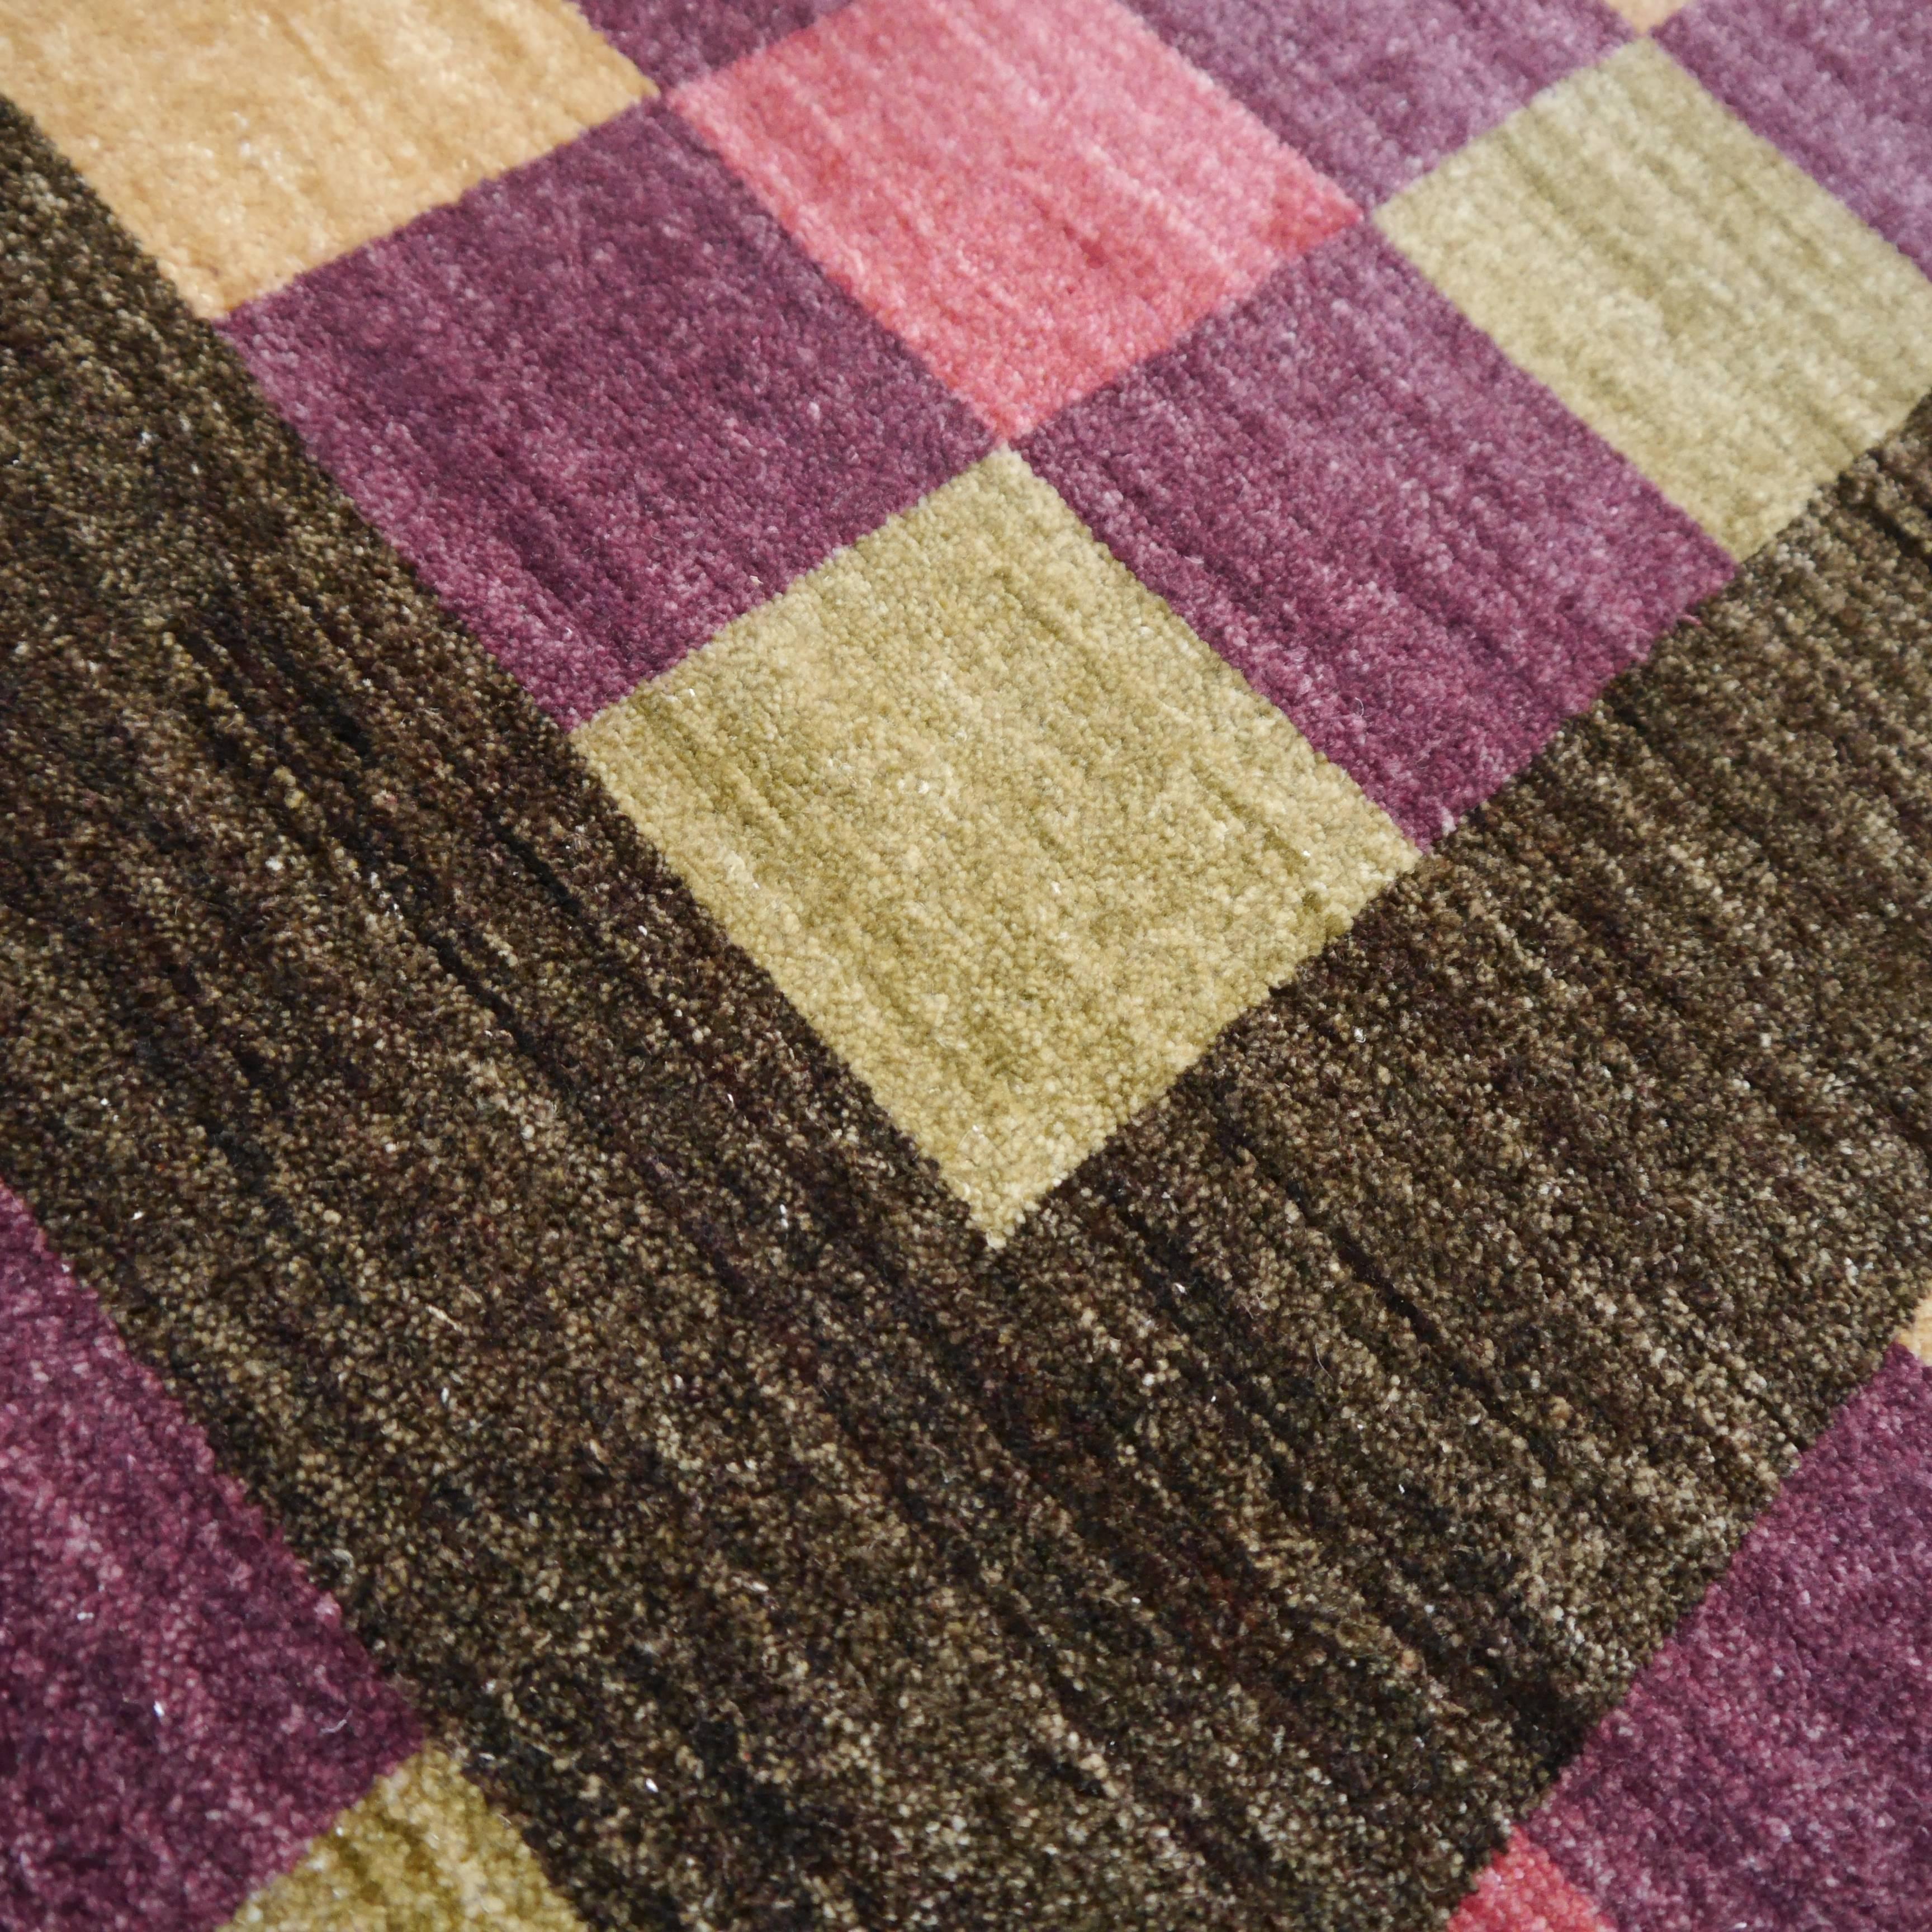 Dieser schöne Teppich ist aus unserer aktuellen Kollektion moderner Agra-Teppiche. Sie wurde von Handwerkern aus bester handgesponnener Schafswolle in traditioneller Knüpftechnik hergestellt. Die Farben sind gut kombiniert und passen sowohl zu